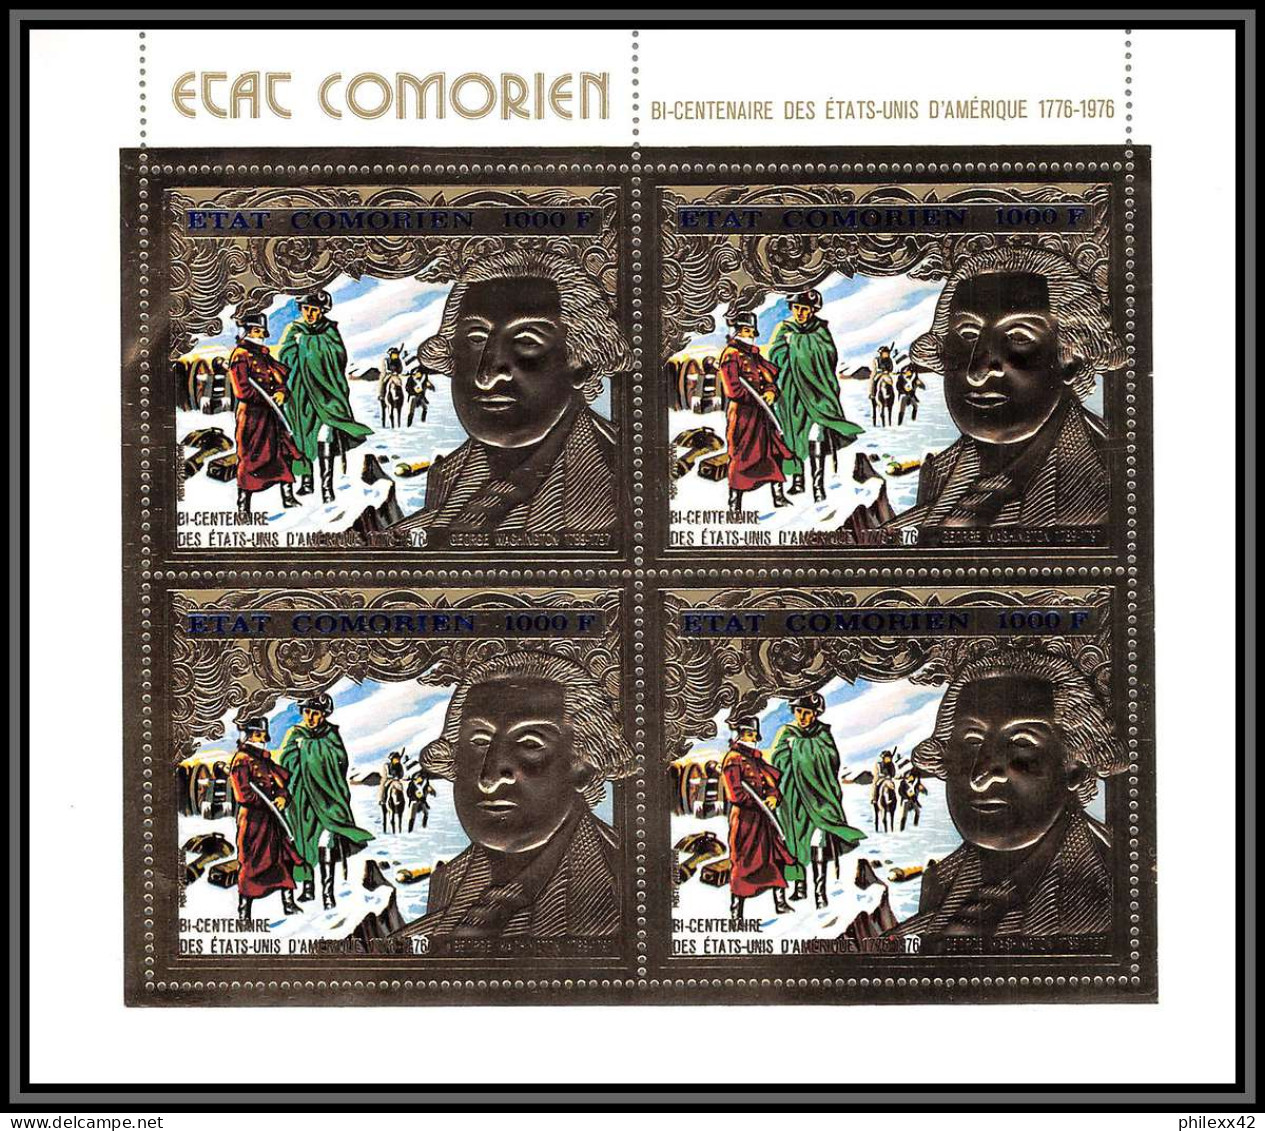 85738 N°264 A USA Bi-centennial Washington 1976 Comores Etat Comorien Timbres OR Gold Stamps ** MNH Bloc 4 - Indépendance USA